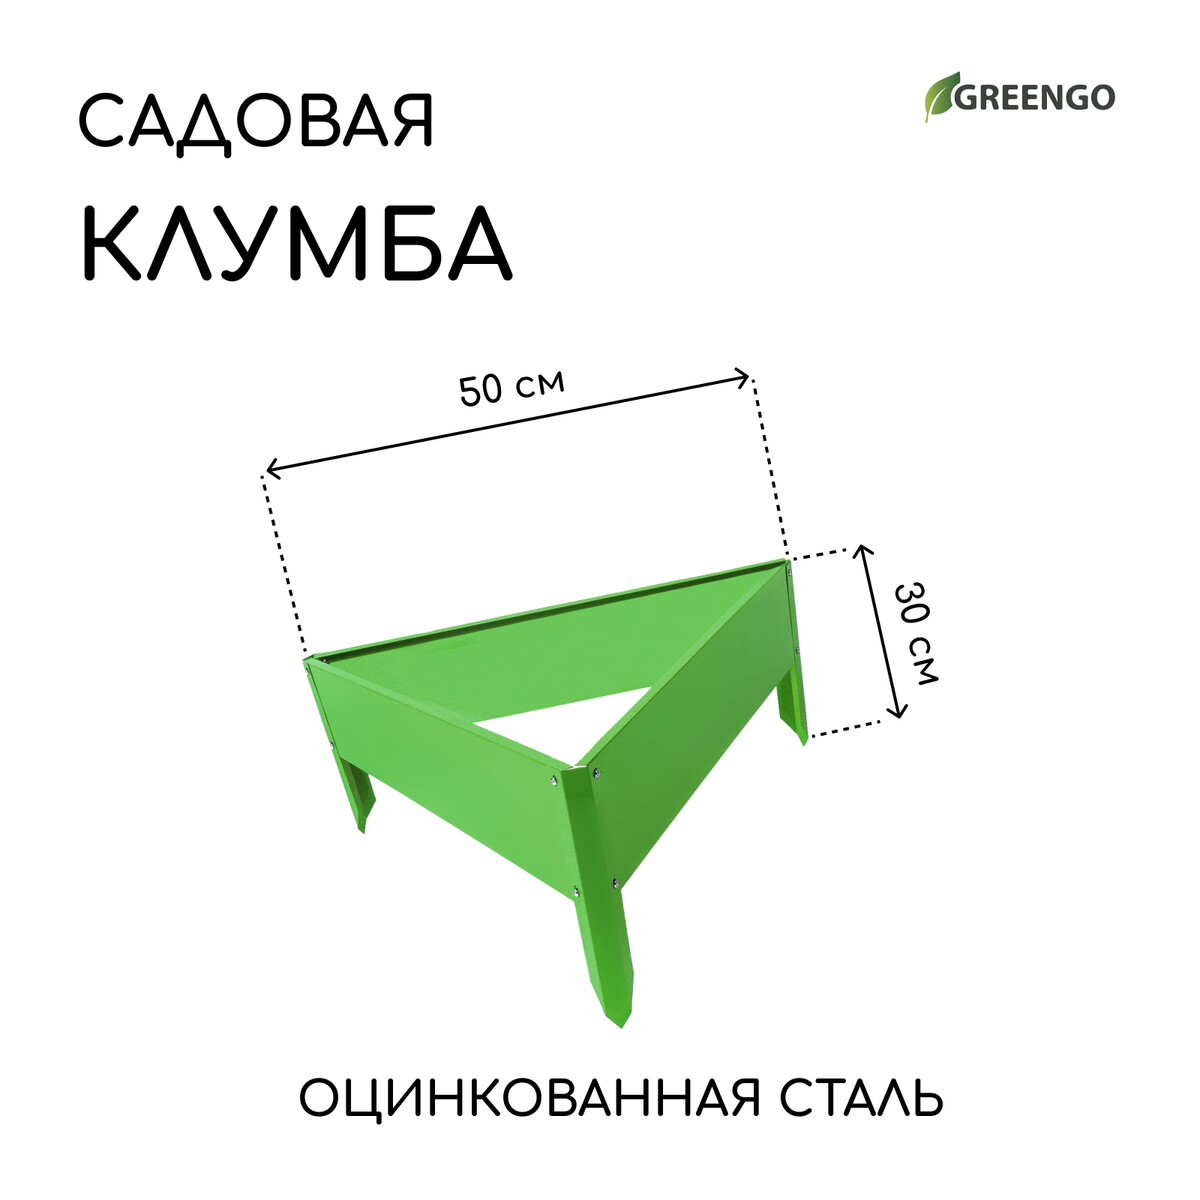 Клумба оцинкованная, 50 × 15 см, ярко-зеленая, клумба оцинкованная 50 × 15 см ярко зеленая